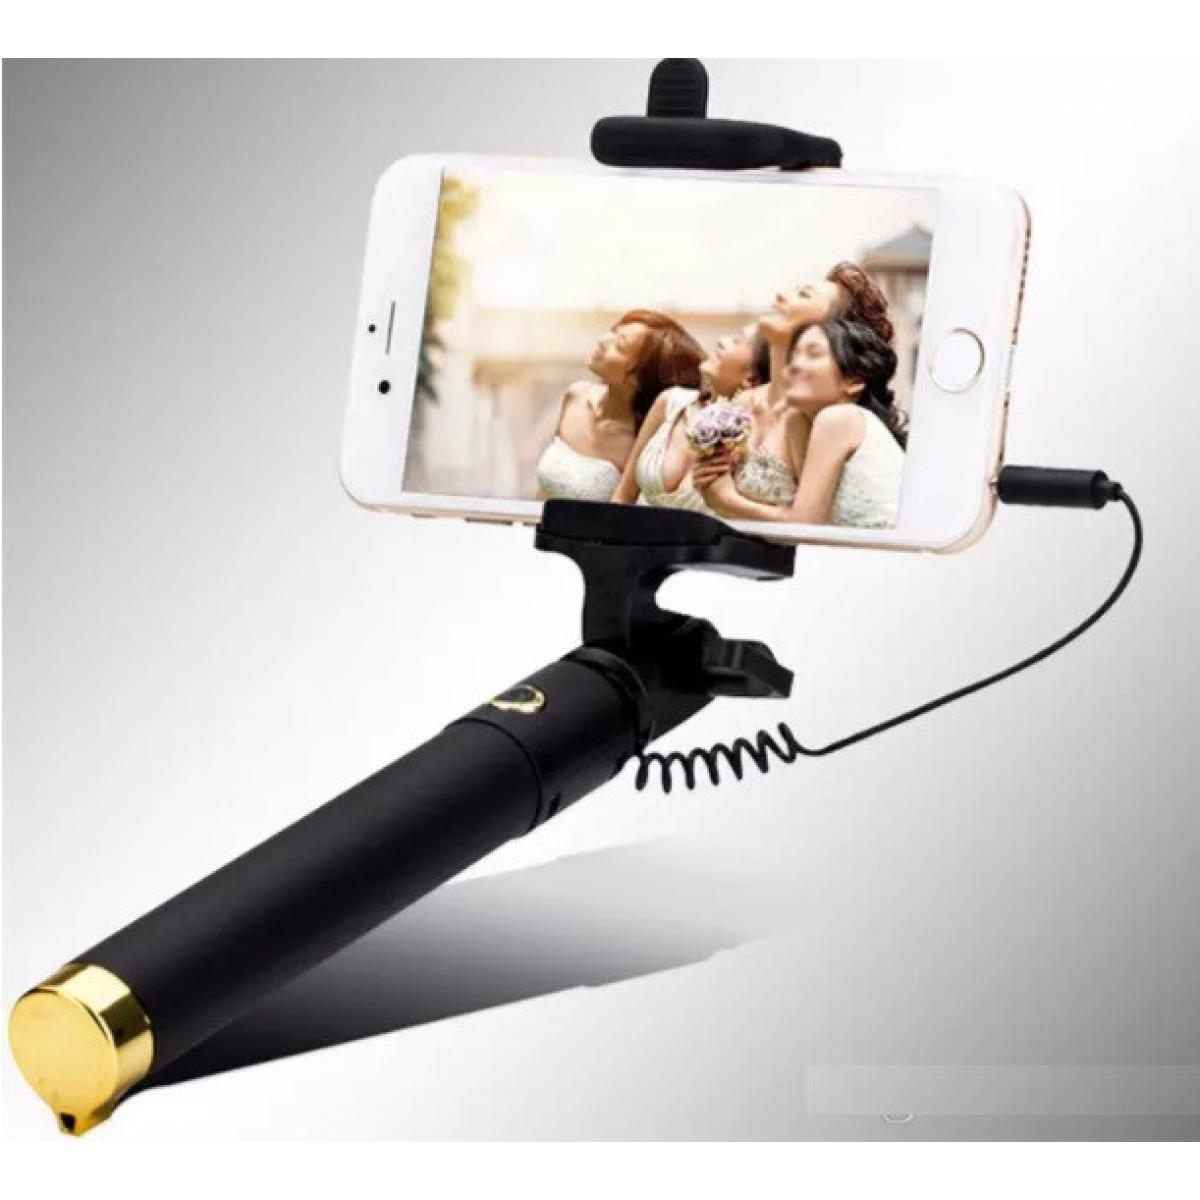 Shot - Perche Selfie Metal pour XIAOMI Mi 9T Smartphone avec Cable Jack Selfie Stick Android IOS Reglable Bouton Photo (OR) - Autres accessoires smartphone